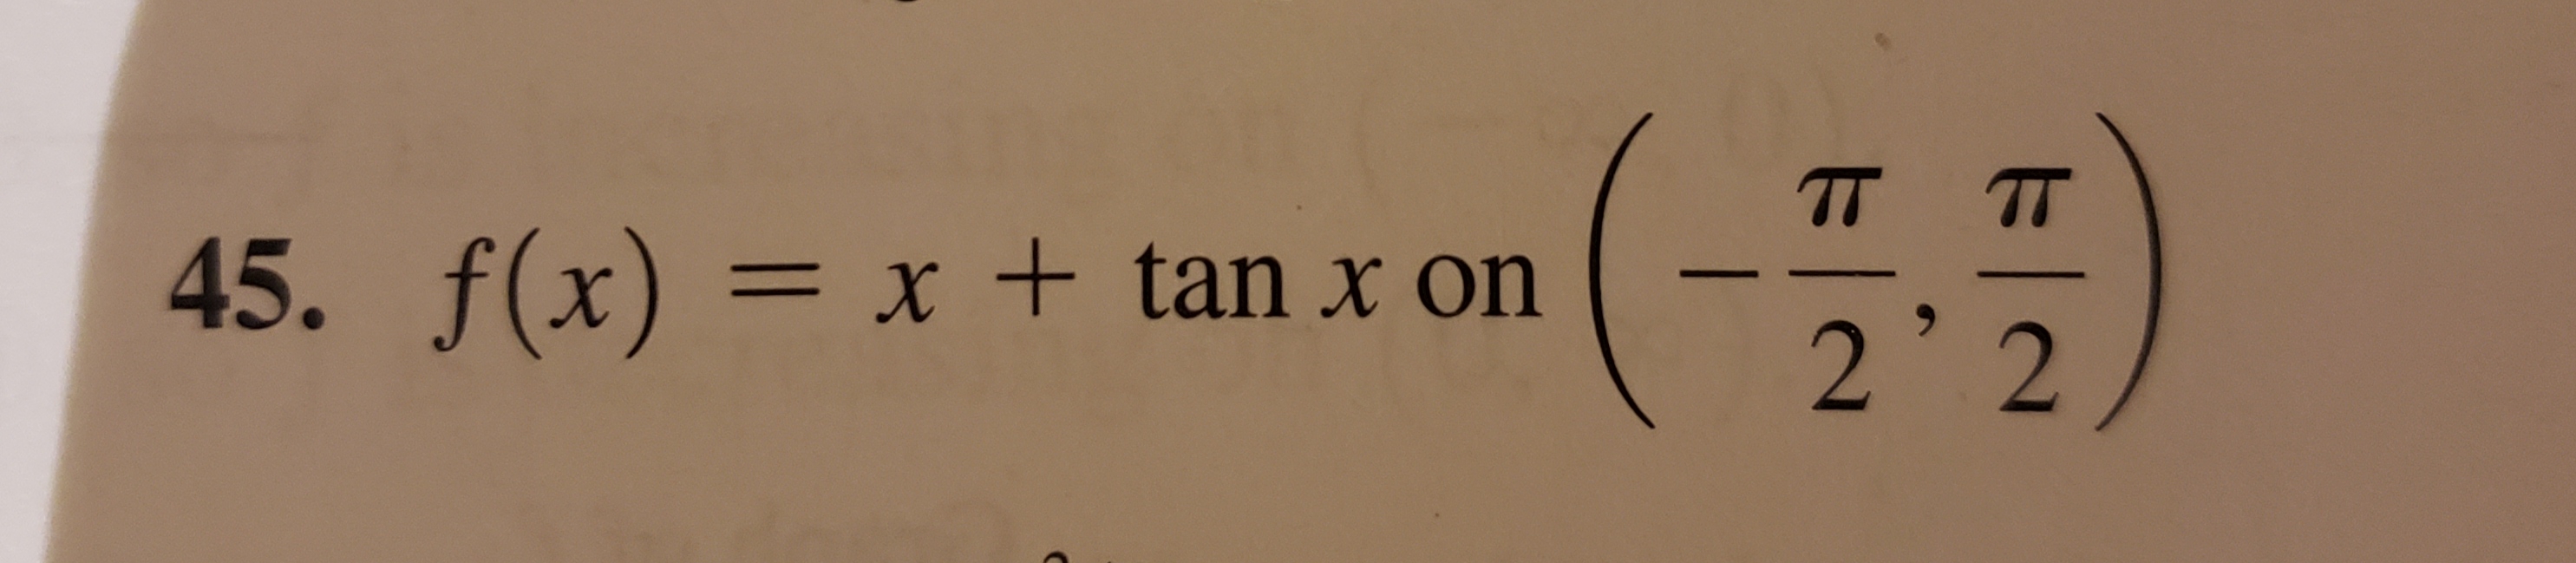 TT
45. f(x) = x + tan x on
2'2
